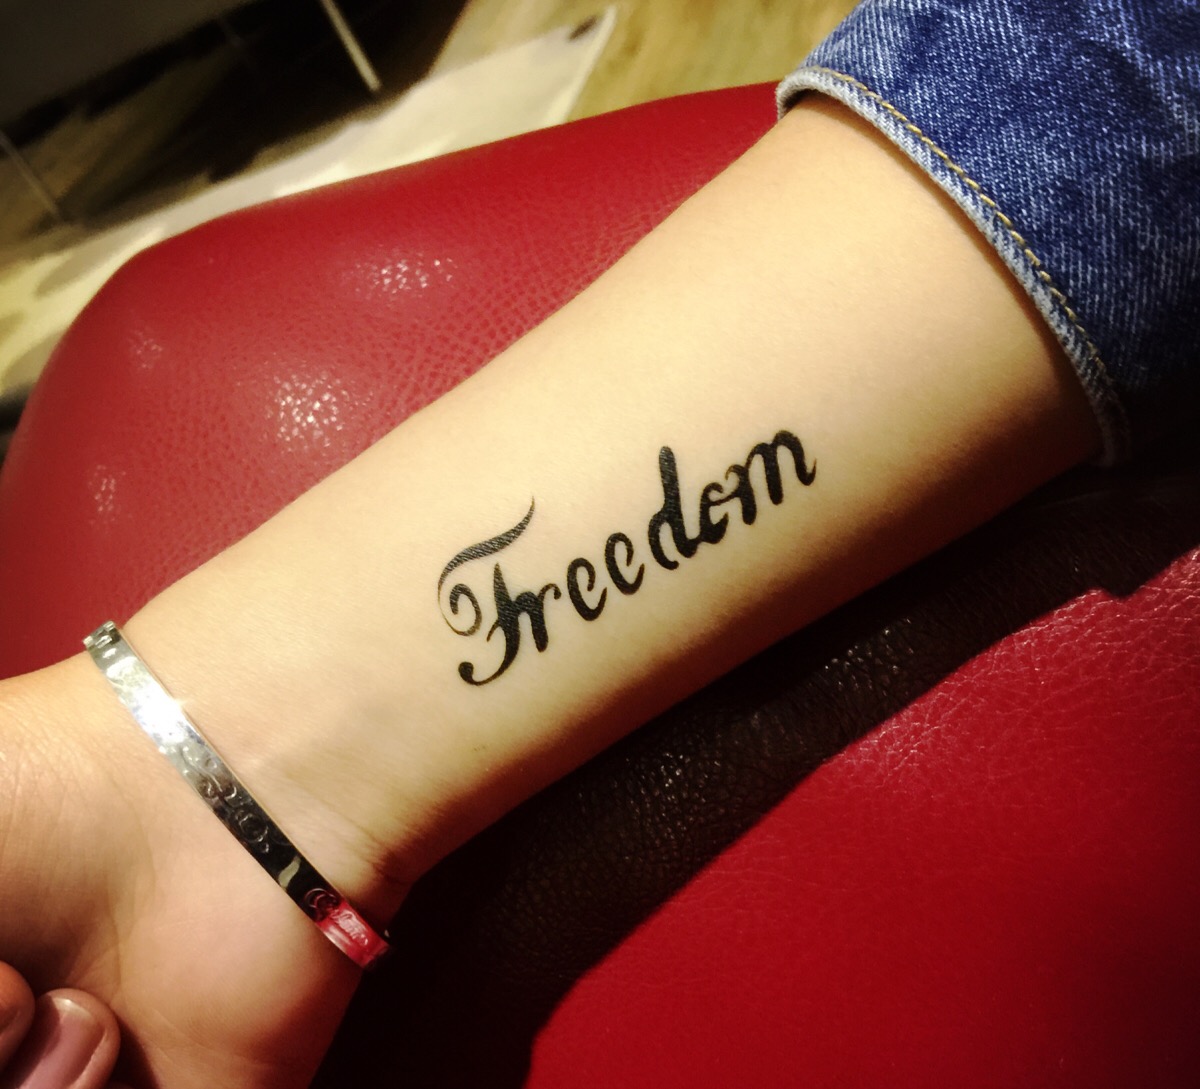 双廊喷的纹身,朋友说这个很适合我!freedom!自由!